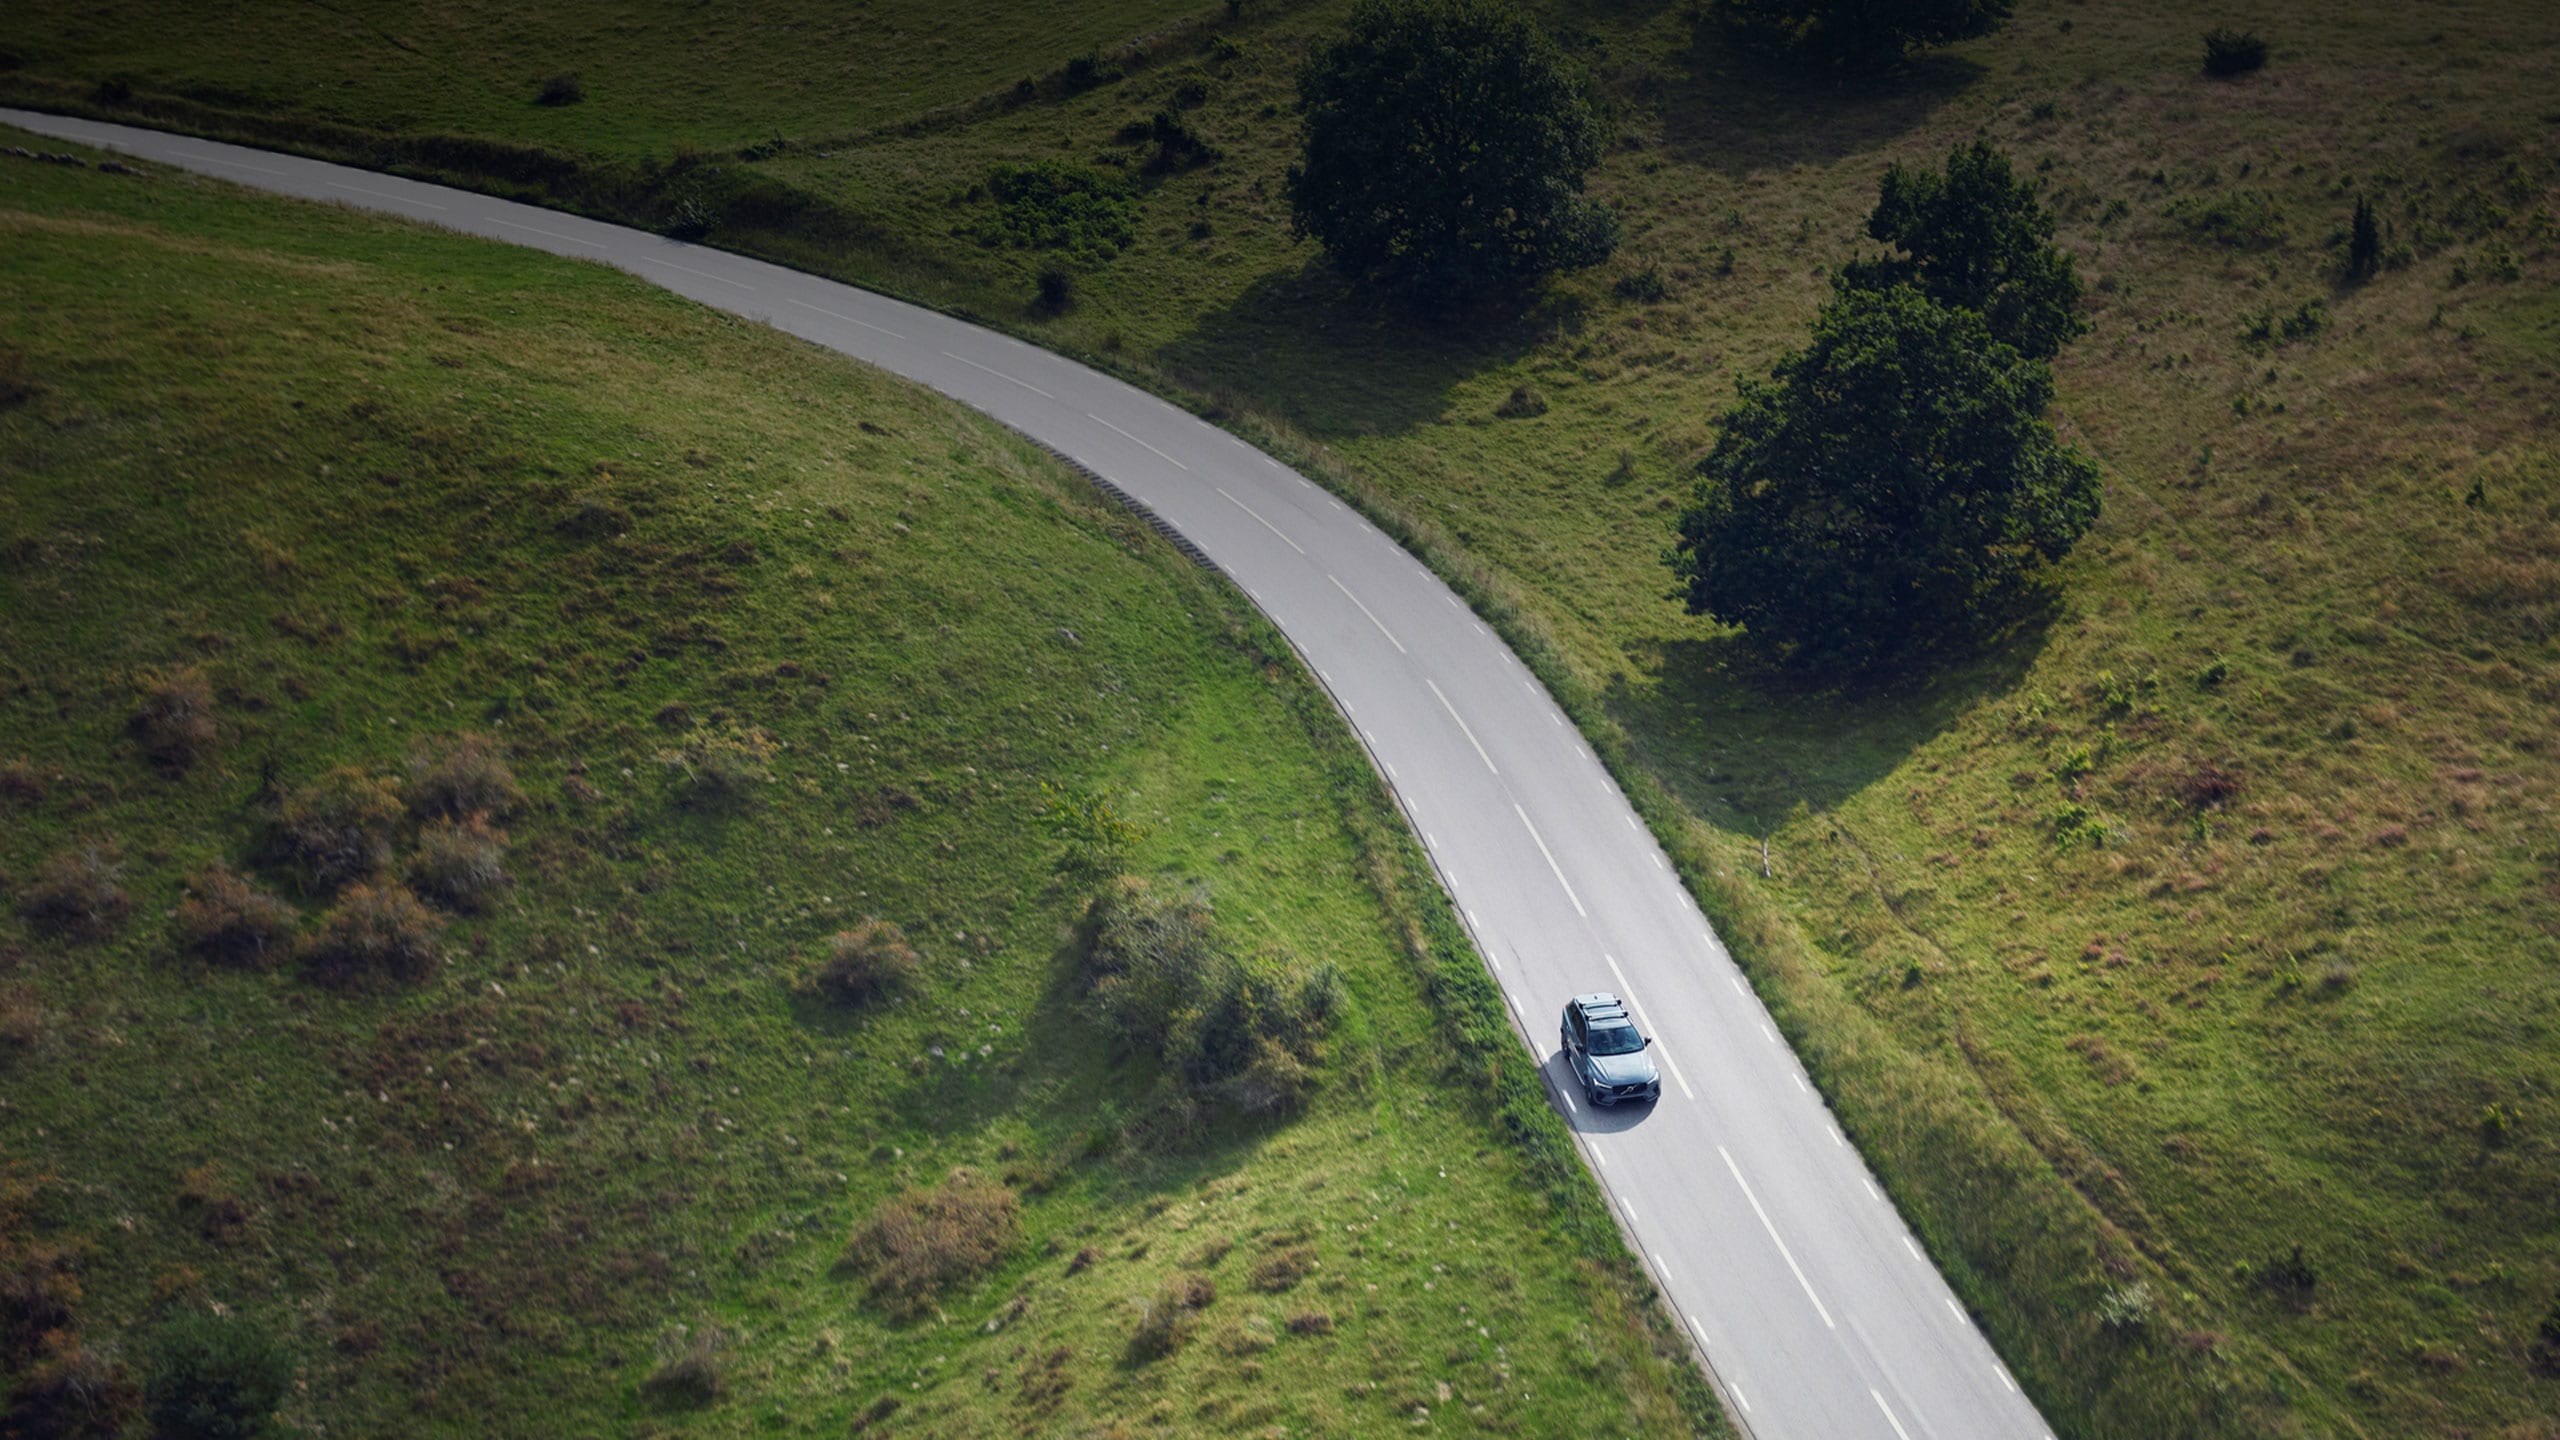 Vehículo Volvo a través de una carretera recorriendo una montaña.